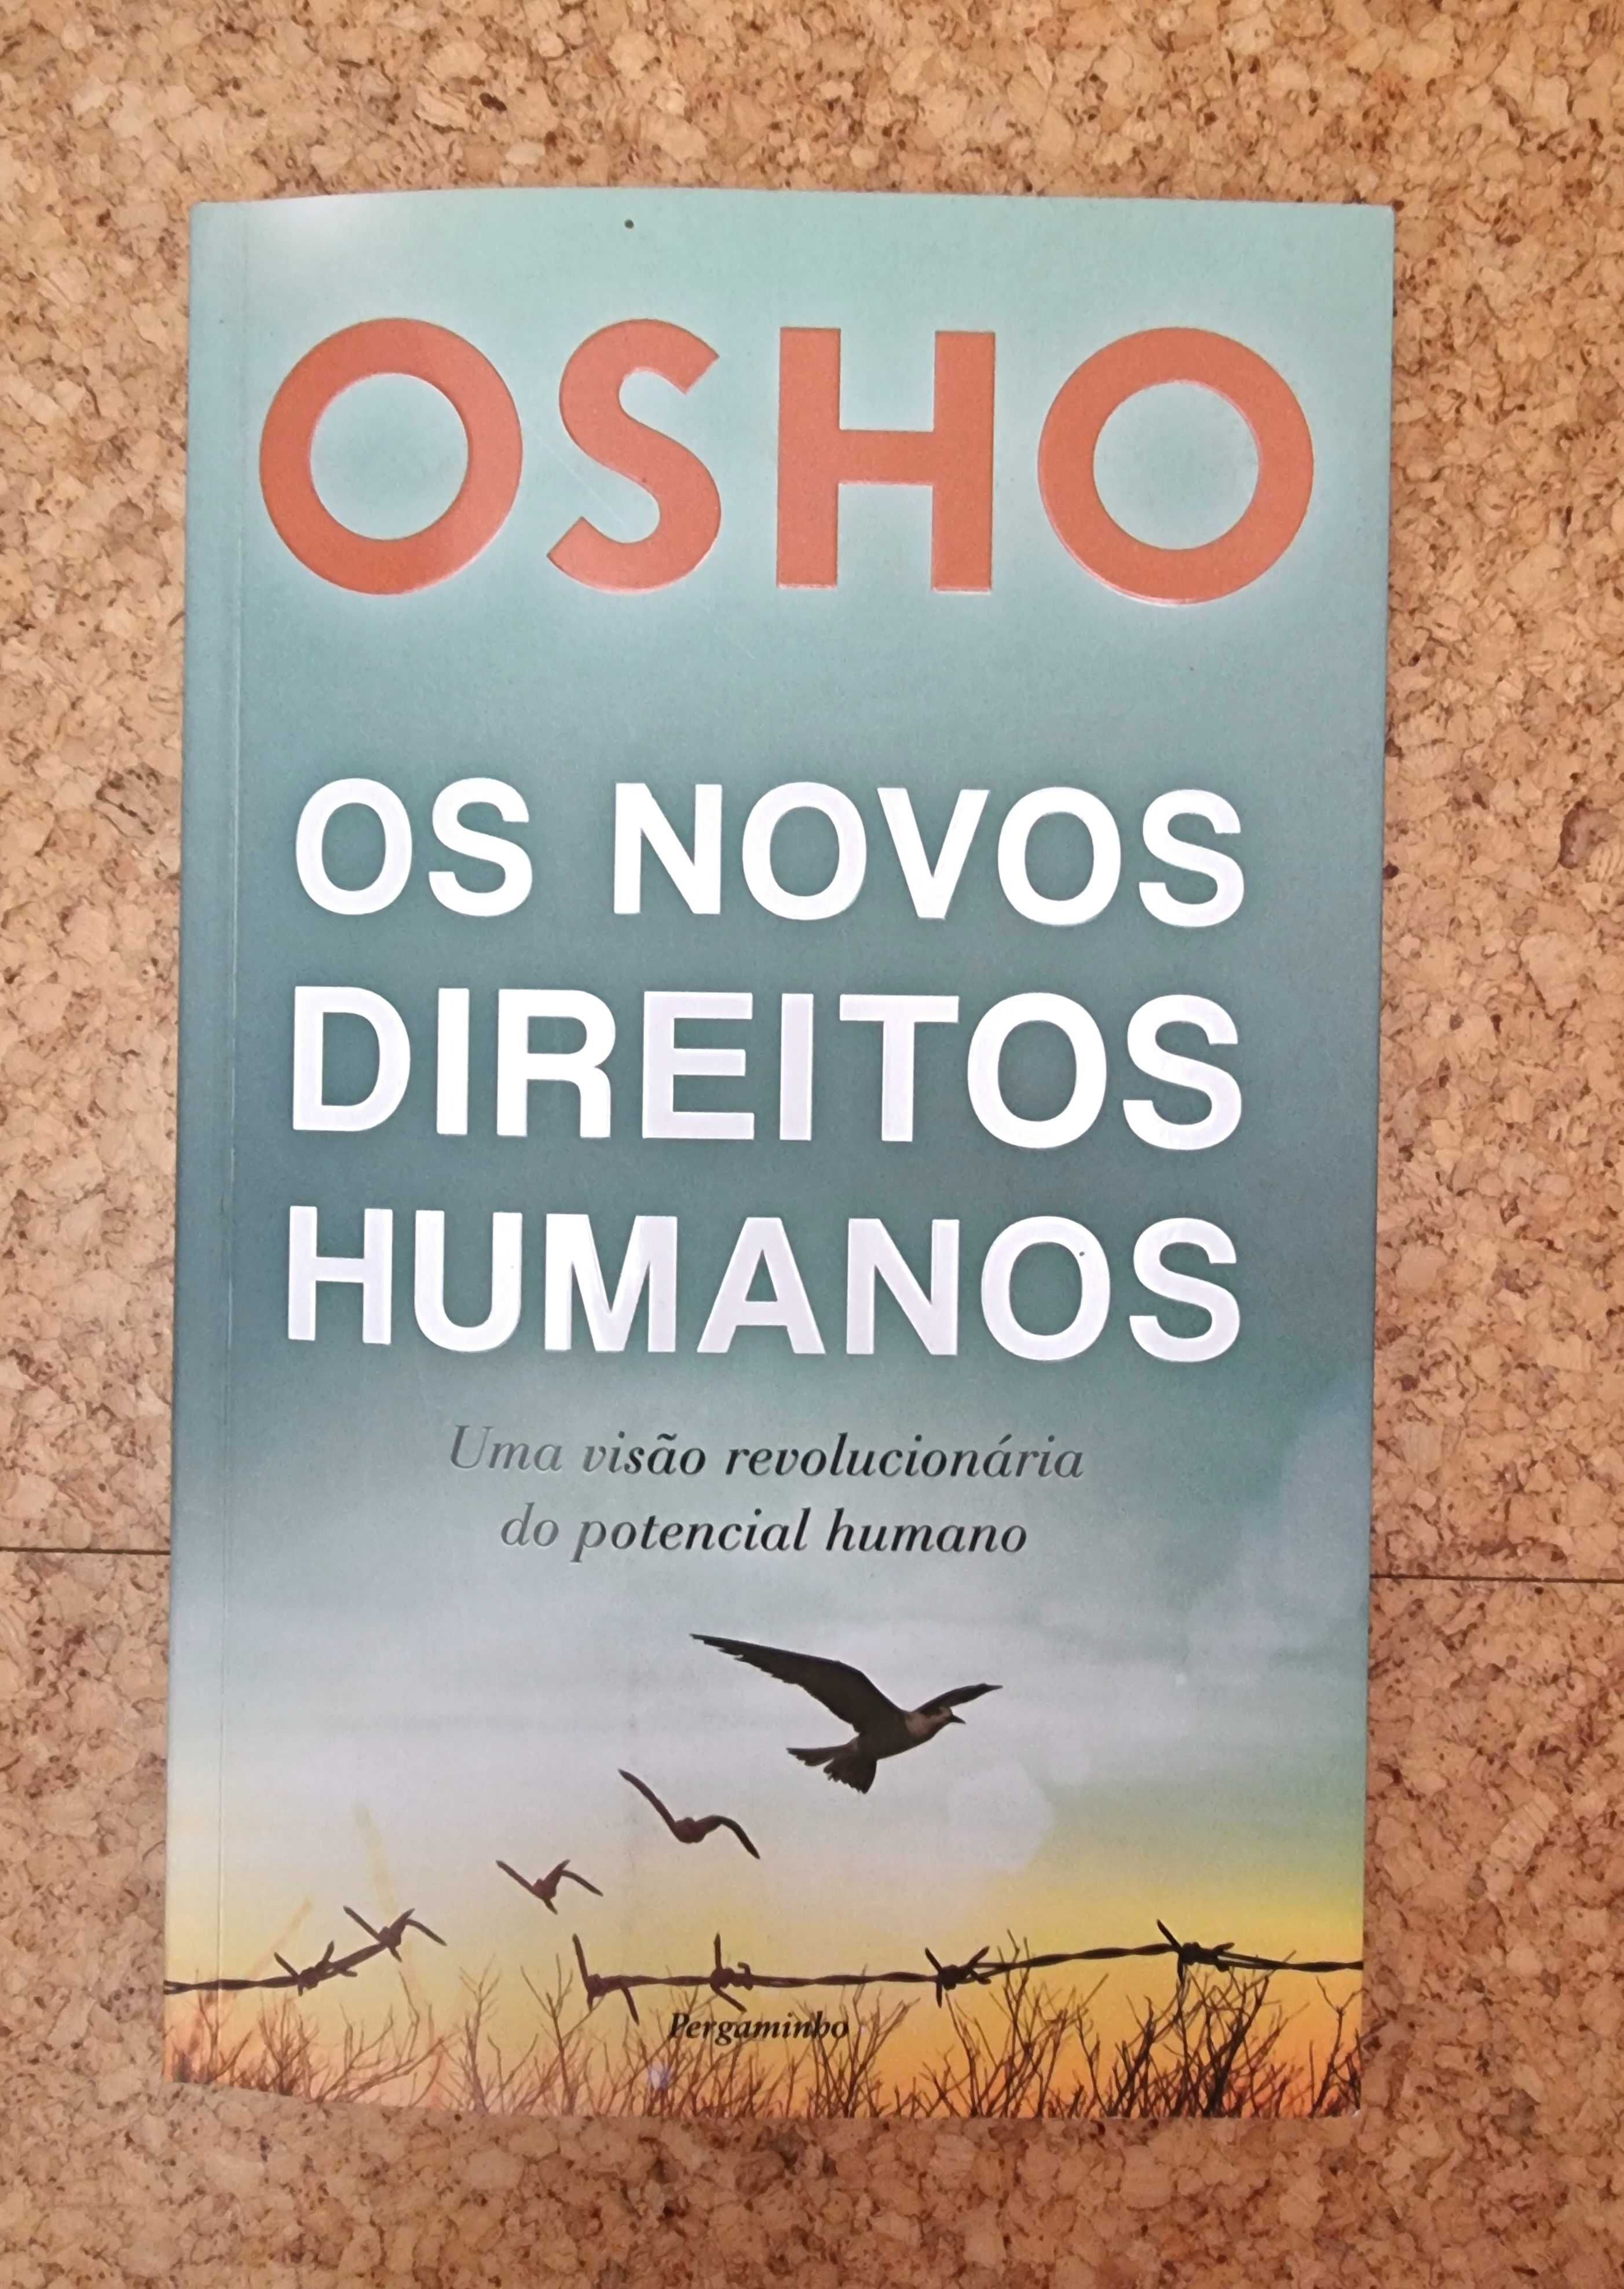 Livro "Os Novos Direitos Humanos" de Osho